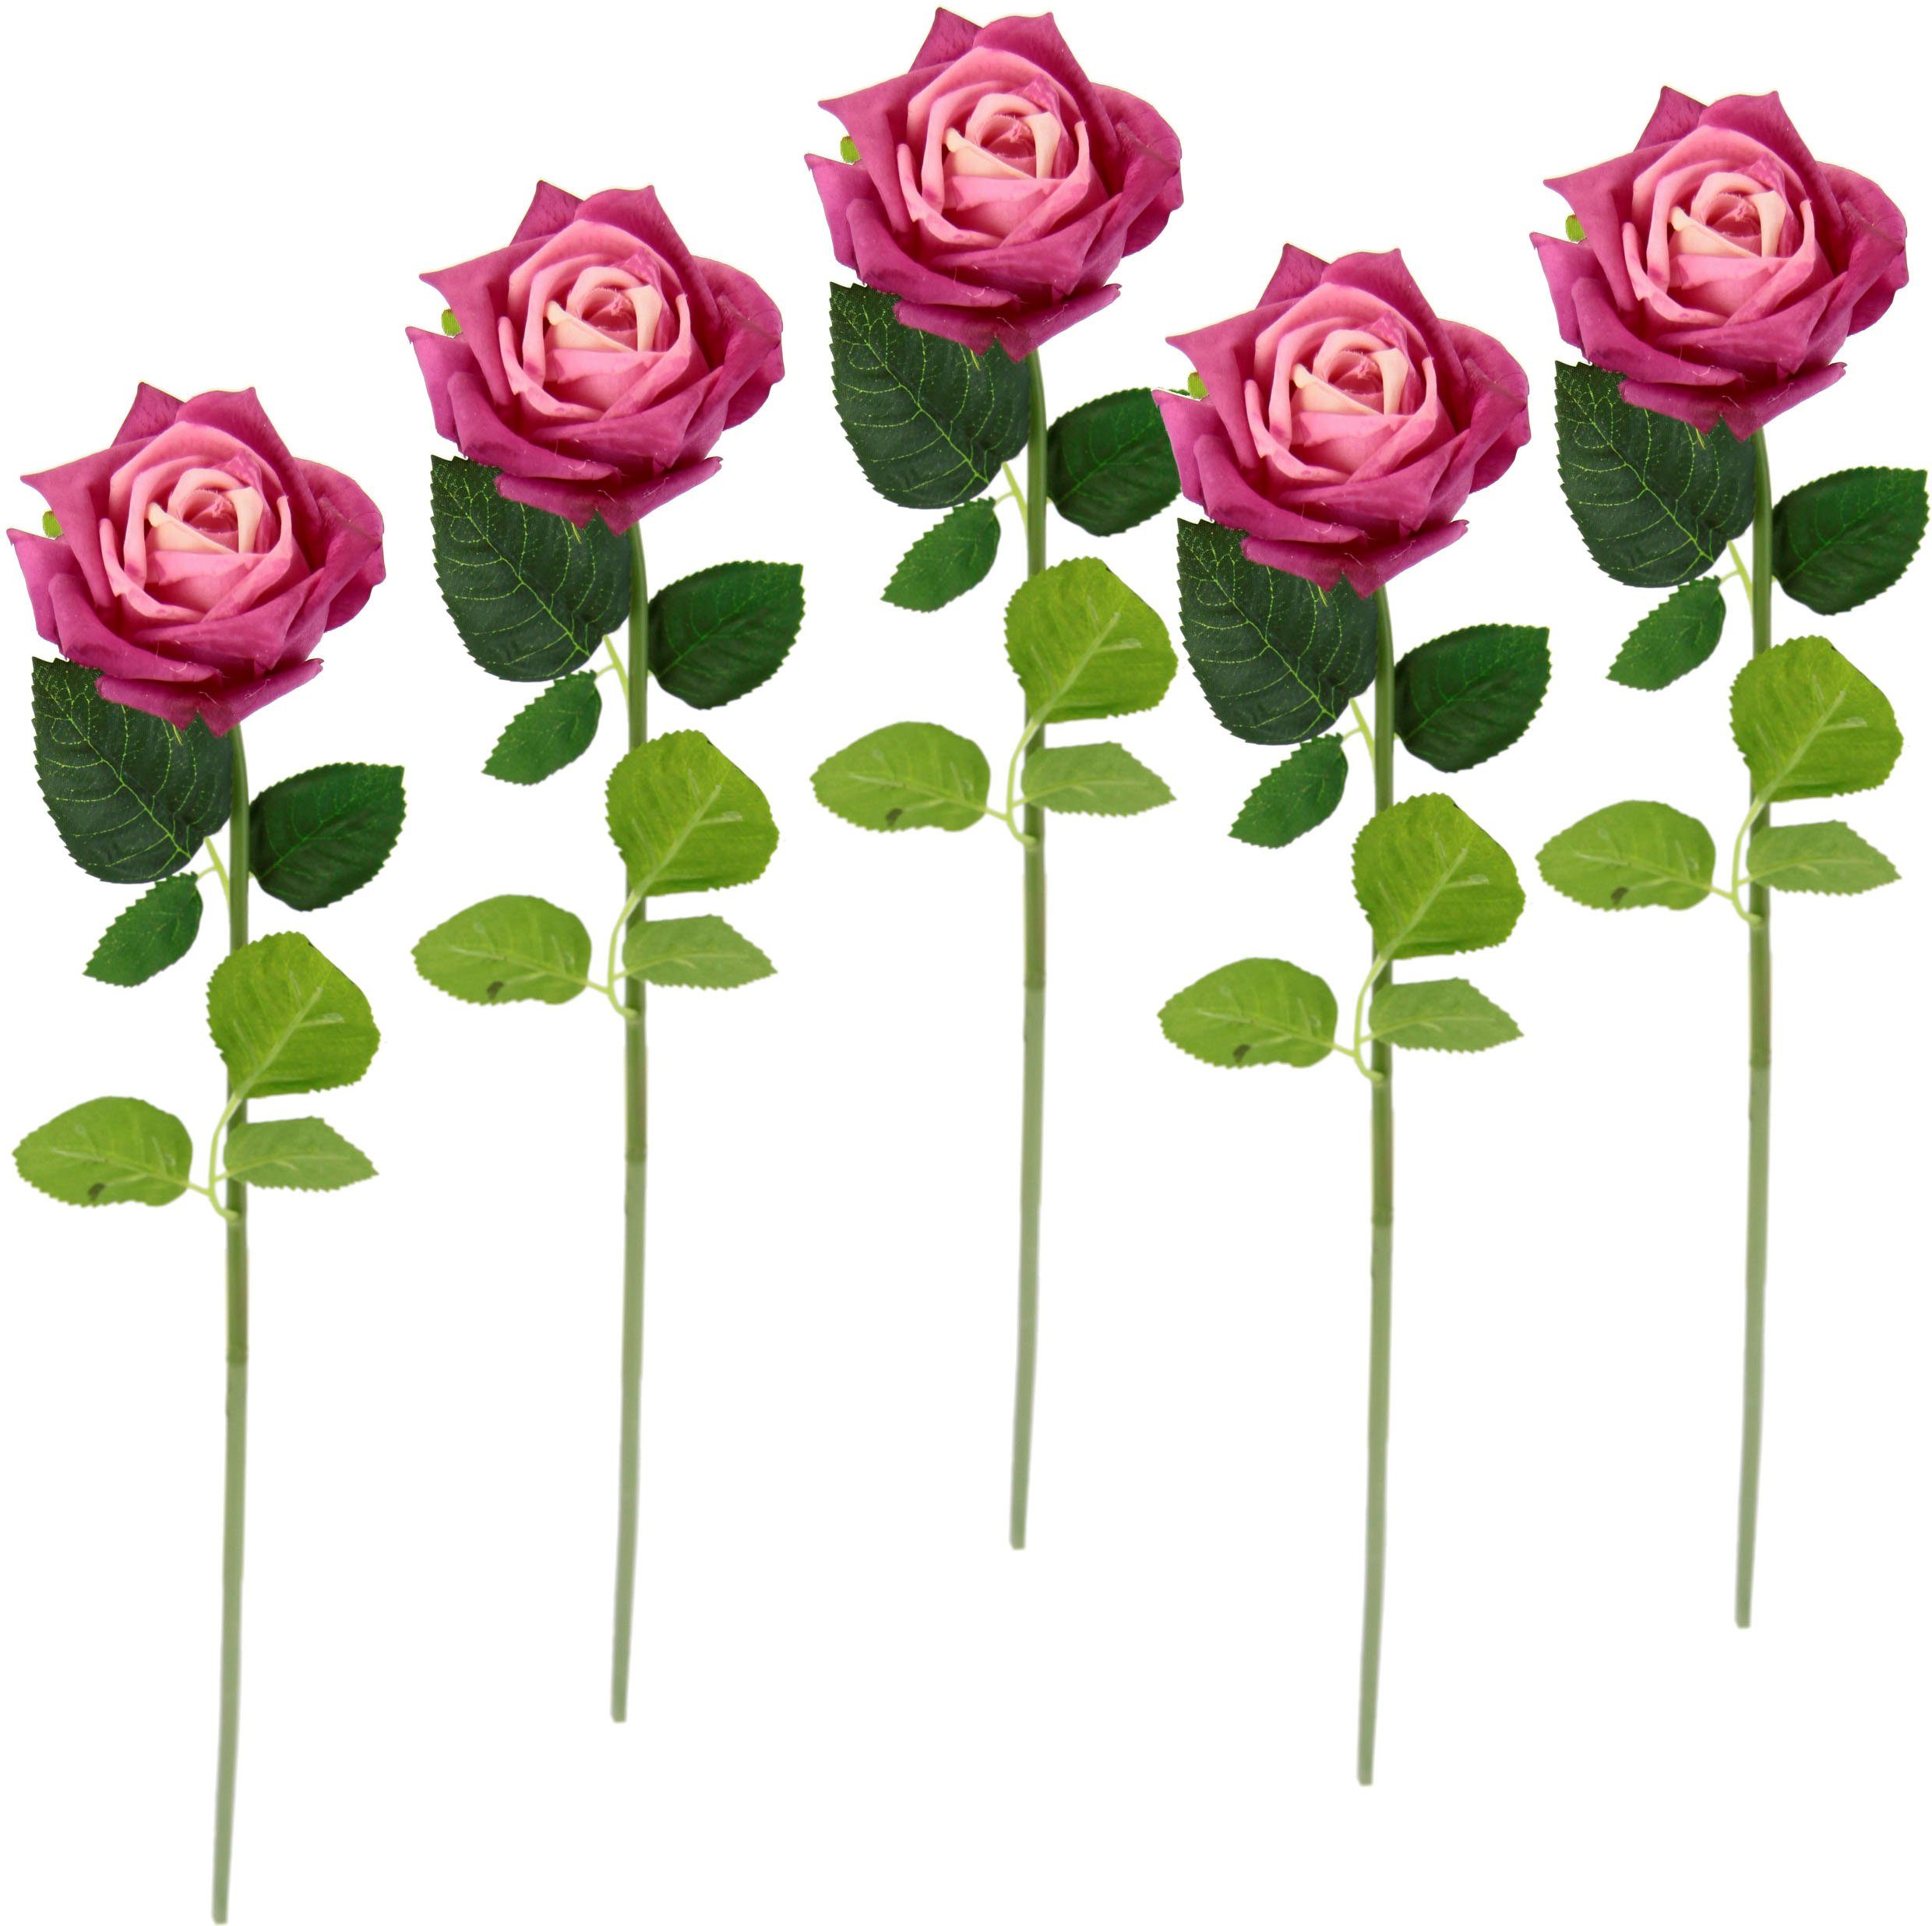 Kunstblume Rose, I.GE.A., Höhe 45 cm, 5er Set künstliche Rosen, Seidenrosen, Bouquet, Kunstzweig, Kunstrose pink